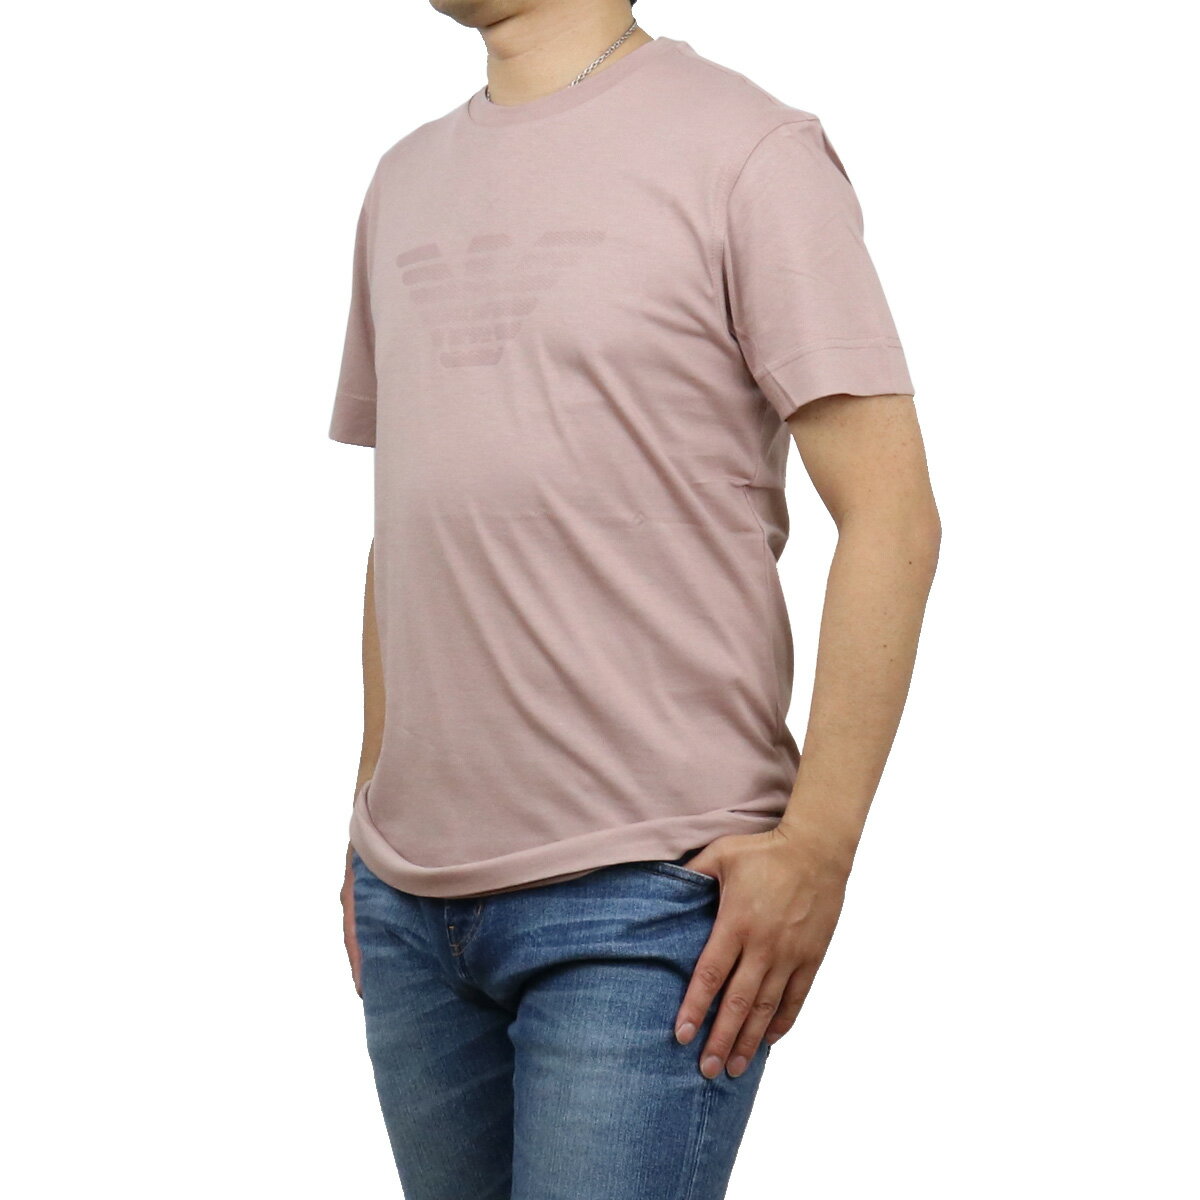 エンポリオ・アルマーニ エンポリオアルマーニ EMPORIO ARMANI メンズ－Tシャツ ブランドTシャツ 3K1TE6 1JSHZ 0306 ROSA ANTICO ピンク系 ts-01 apparel-01